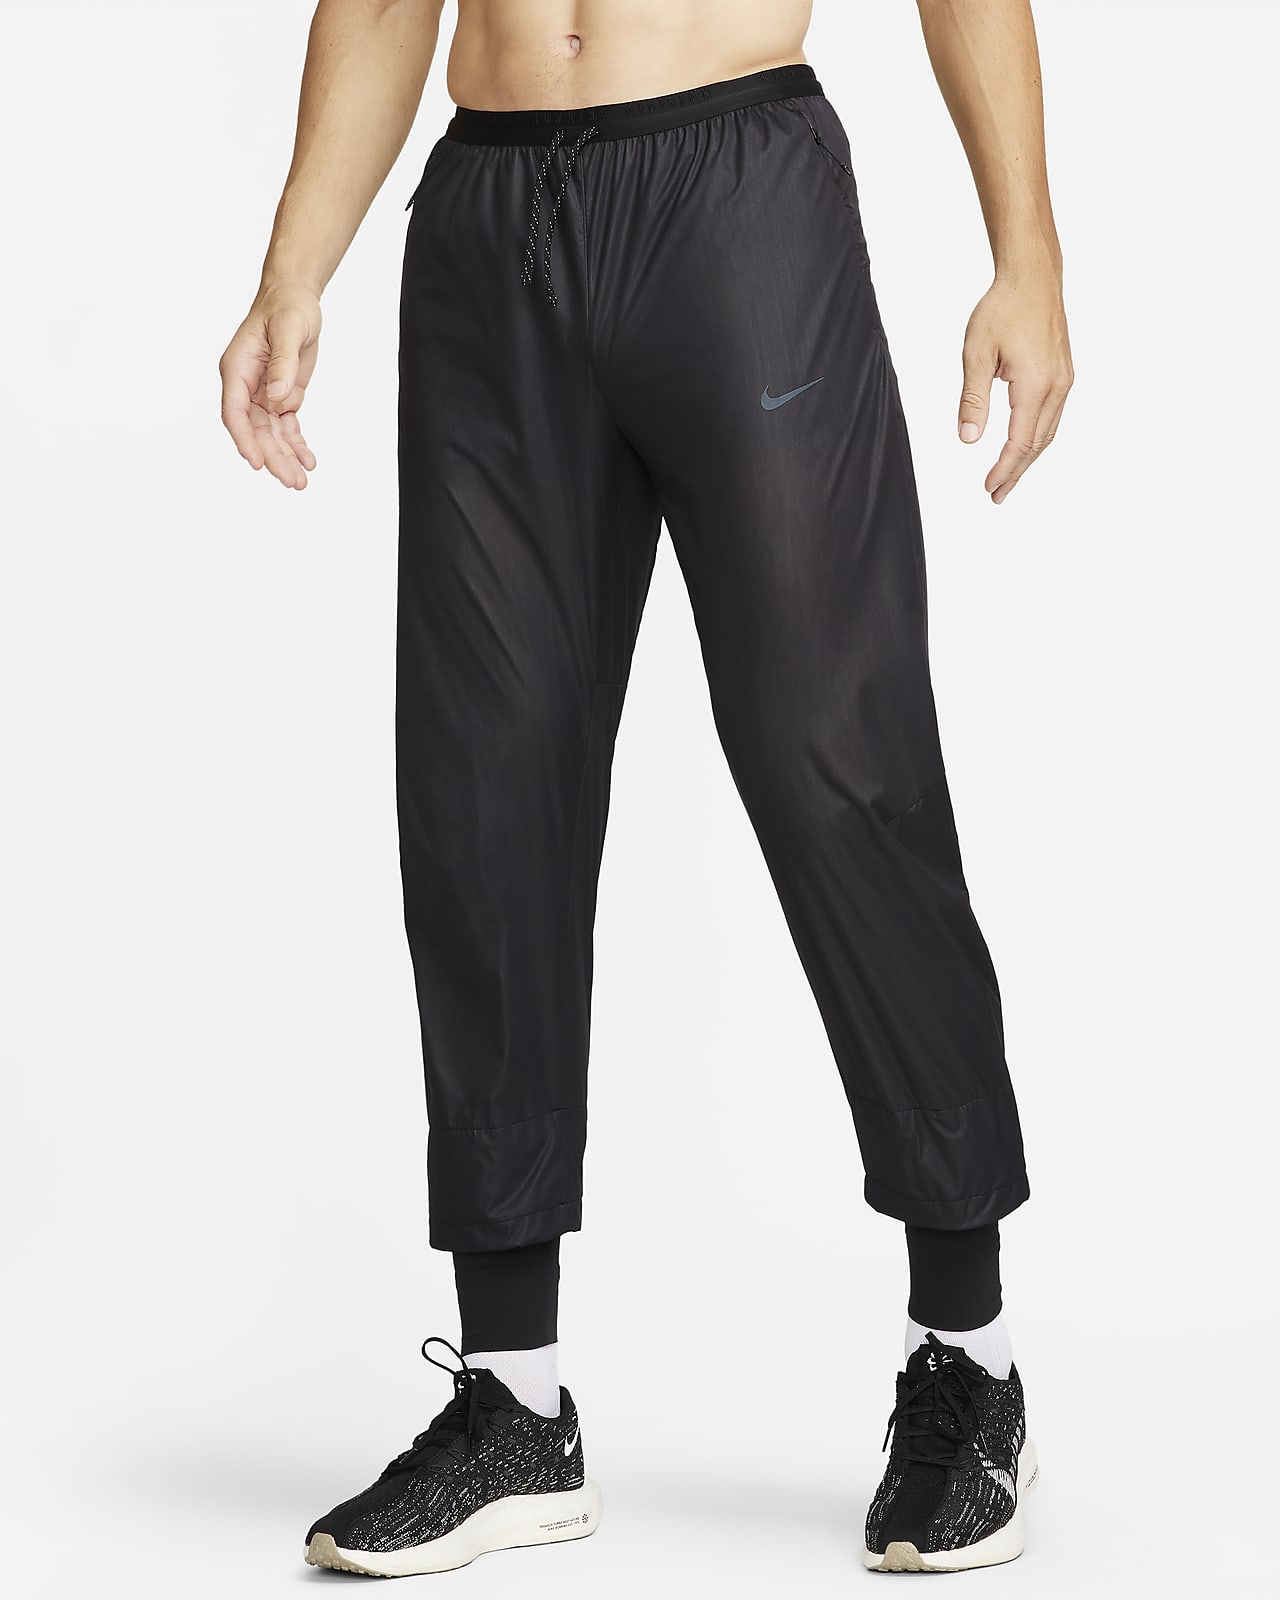 Ανδρικό παντελόνι Storm-FIT για τρέξιμο Nike Running Division Phenom